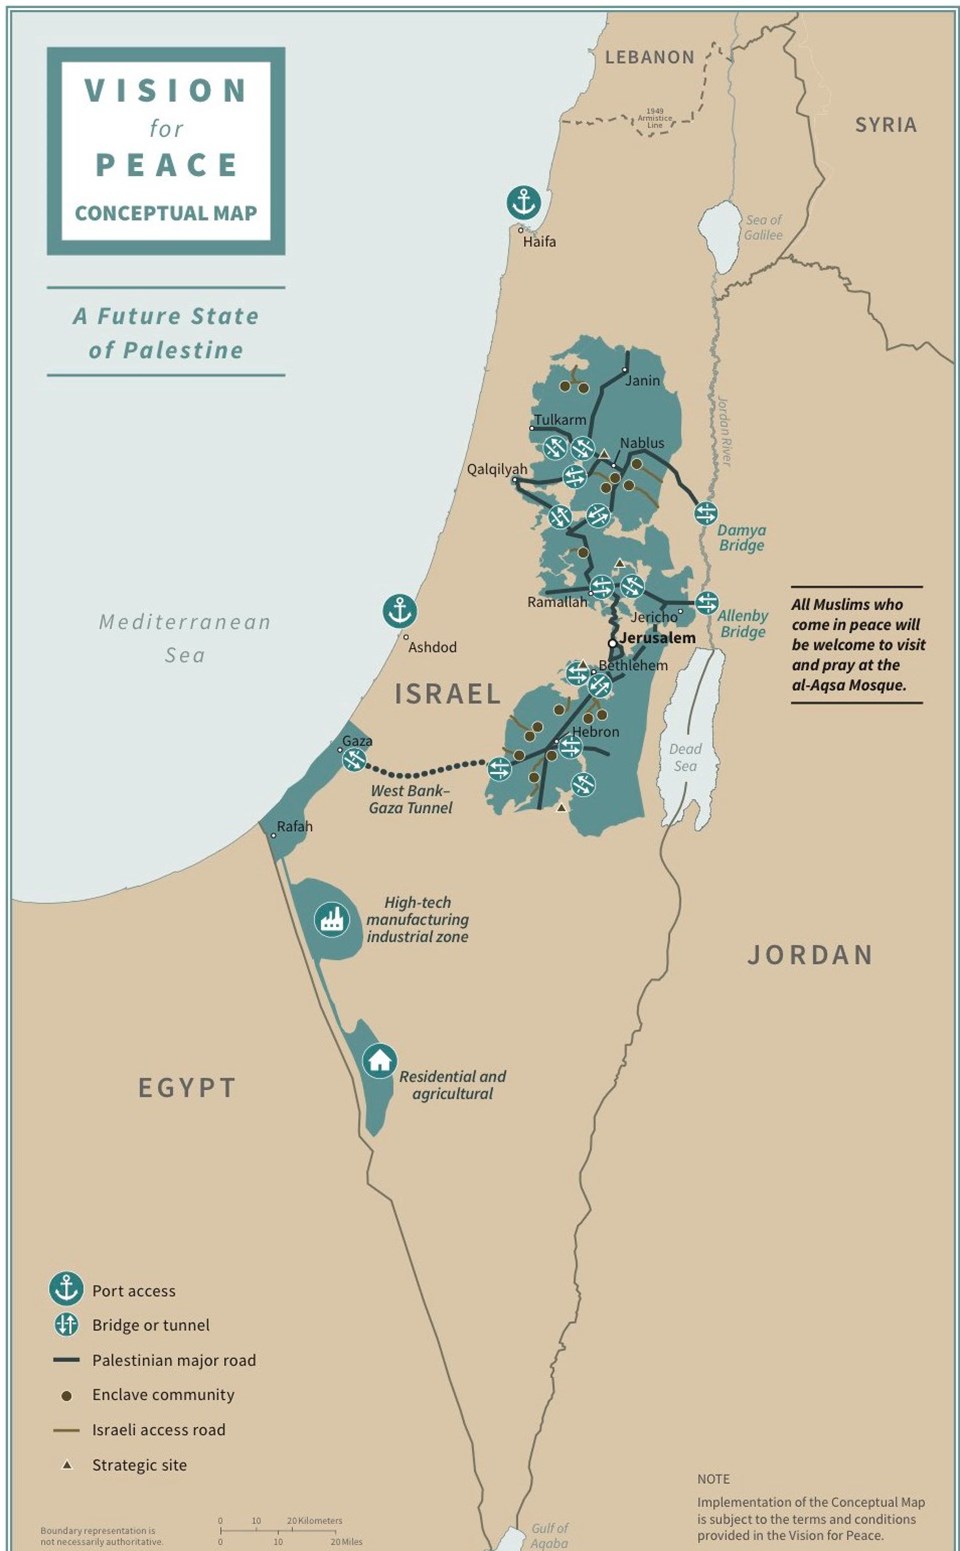 ABD Başkanı Donald Trump, tek taraflı Ortadoğu barış planı kapsamında öngörülen İsrail ve Filistin devletlerinin sınırlarını gösteren bir haritayı paylaştı.